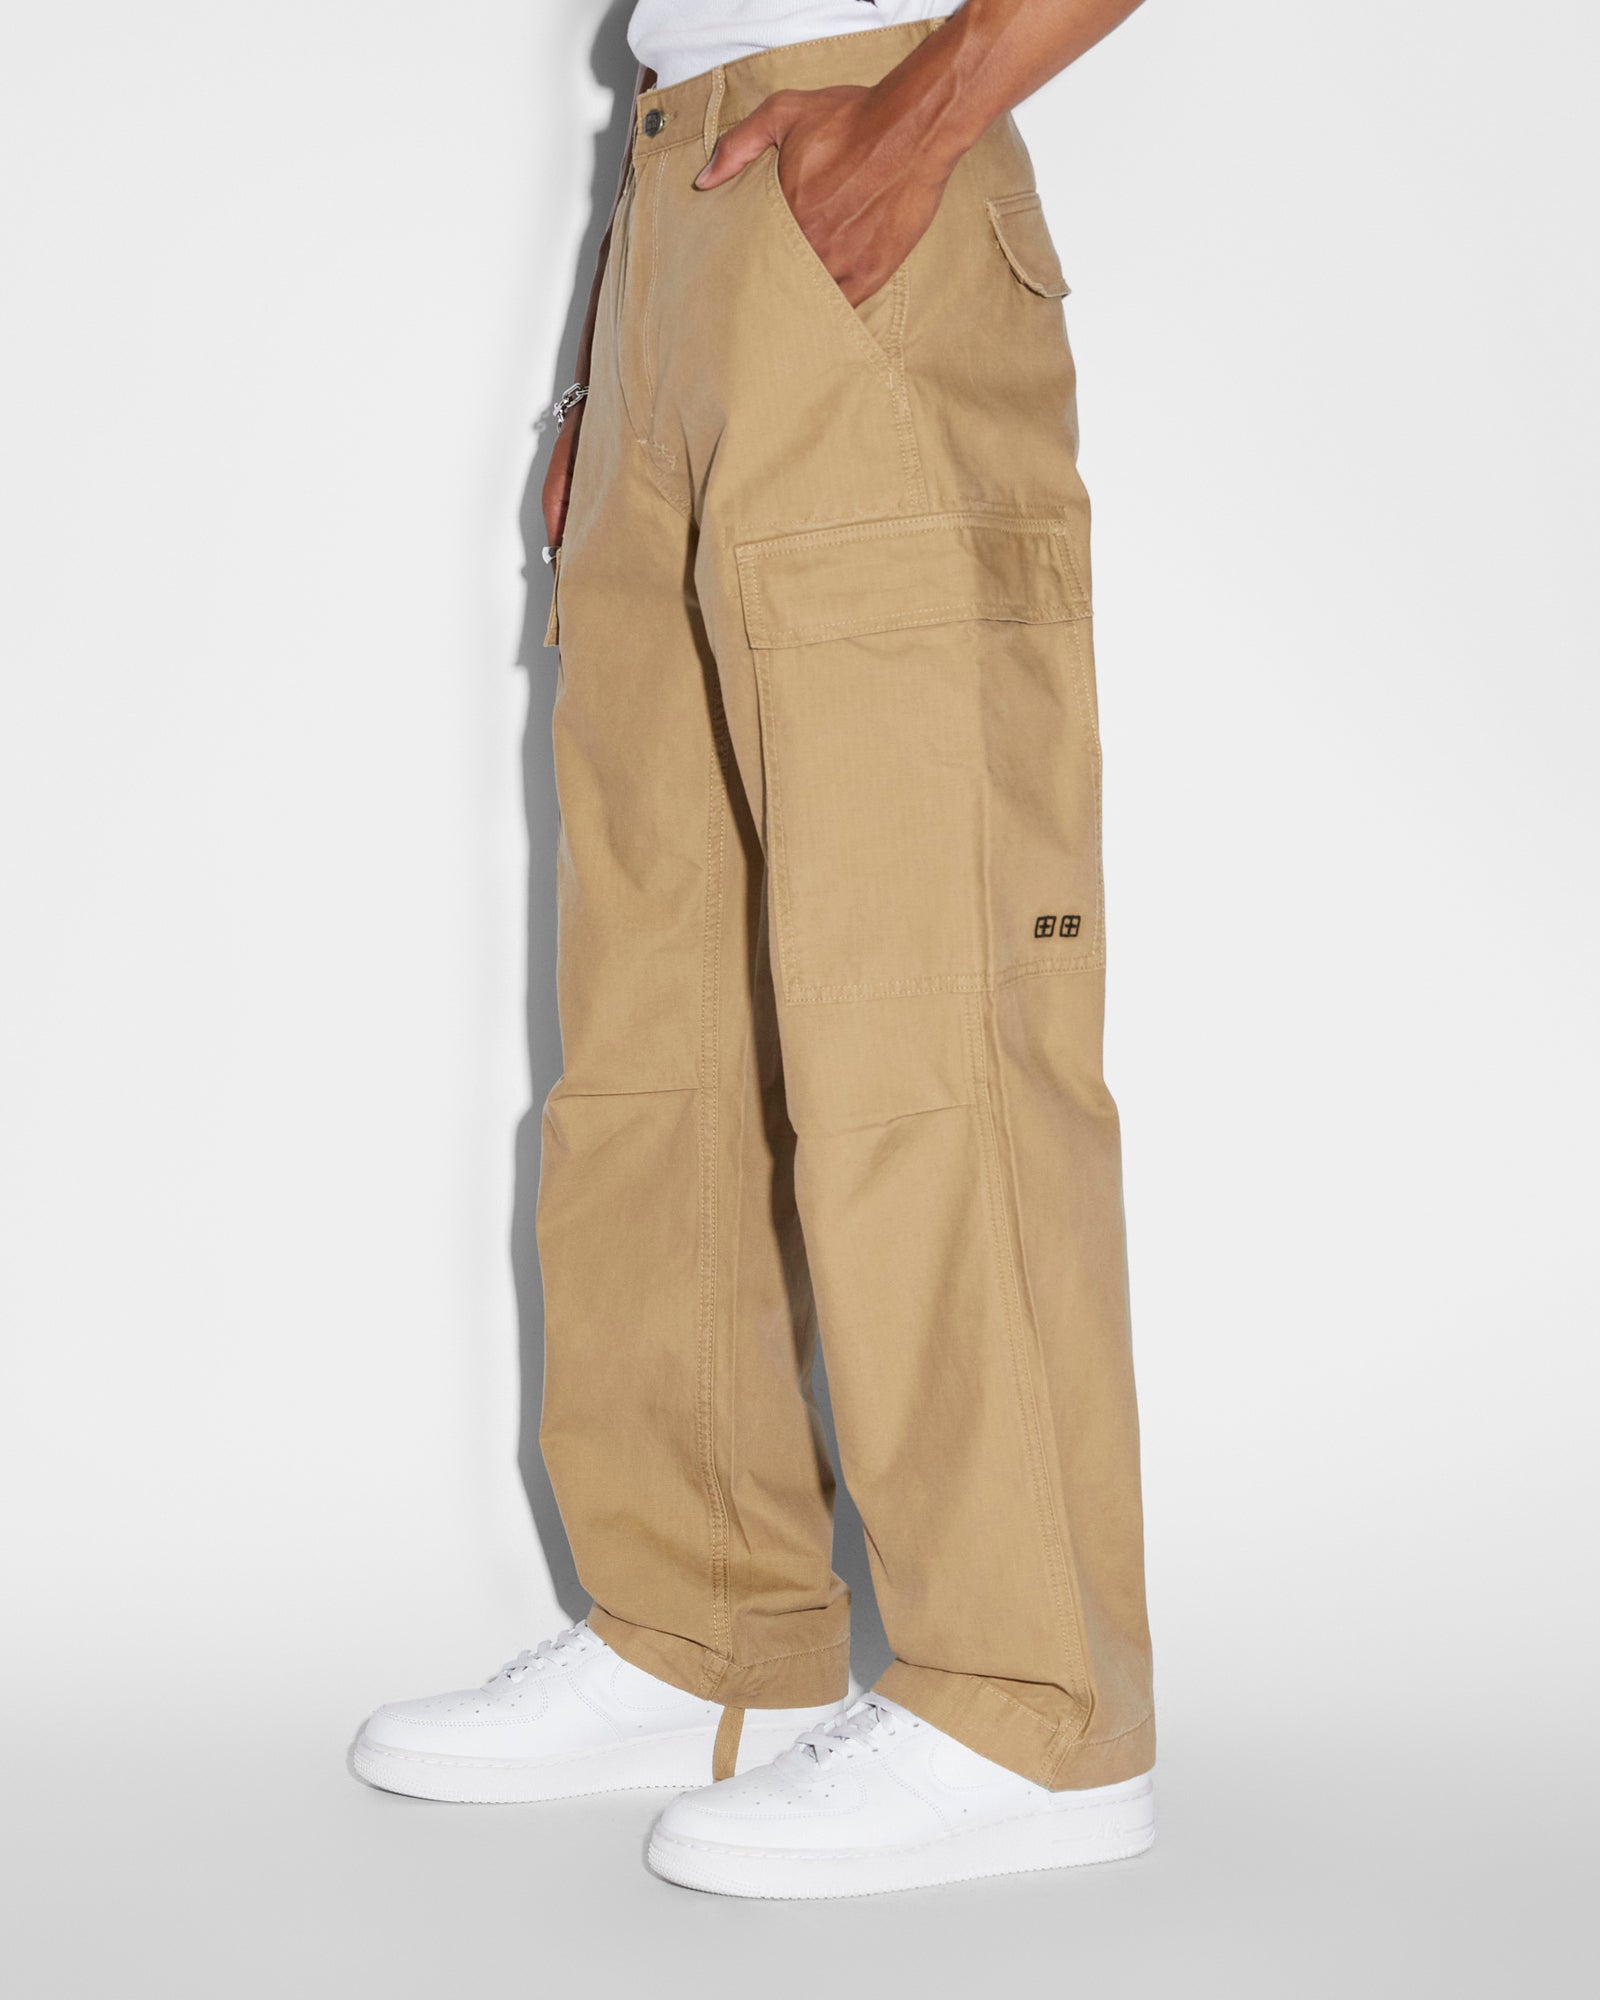 Cargo Trouser pants double pocket